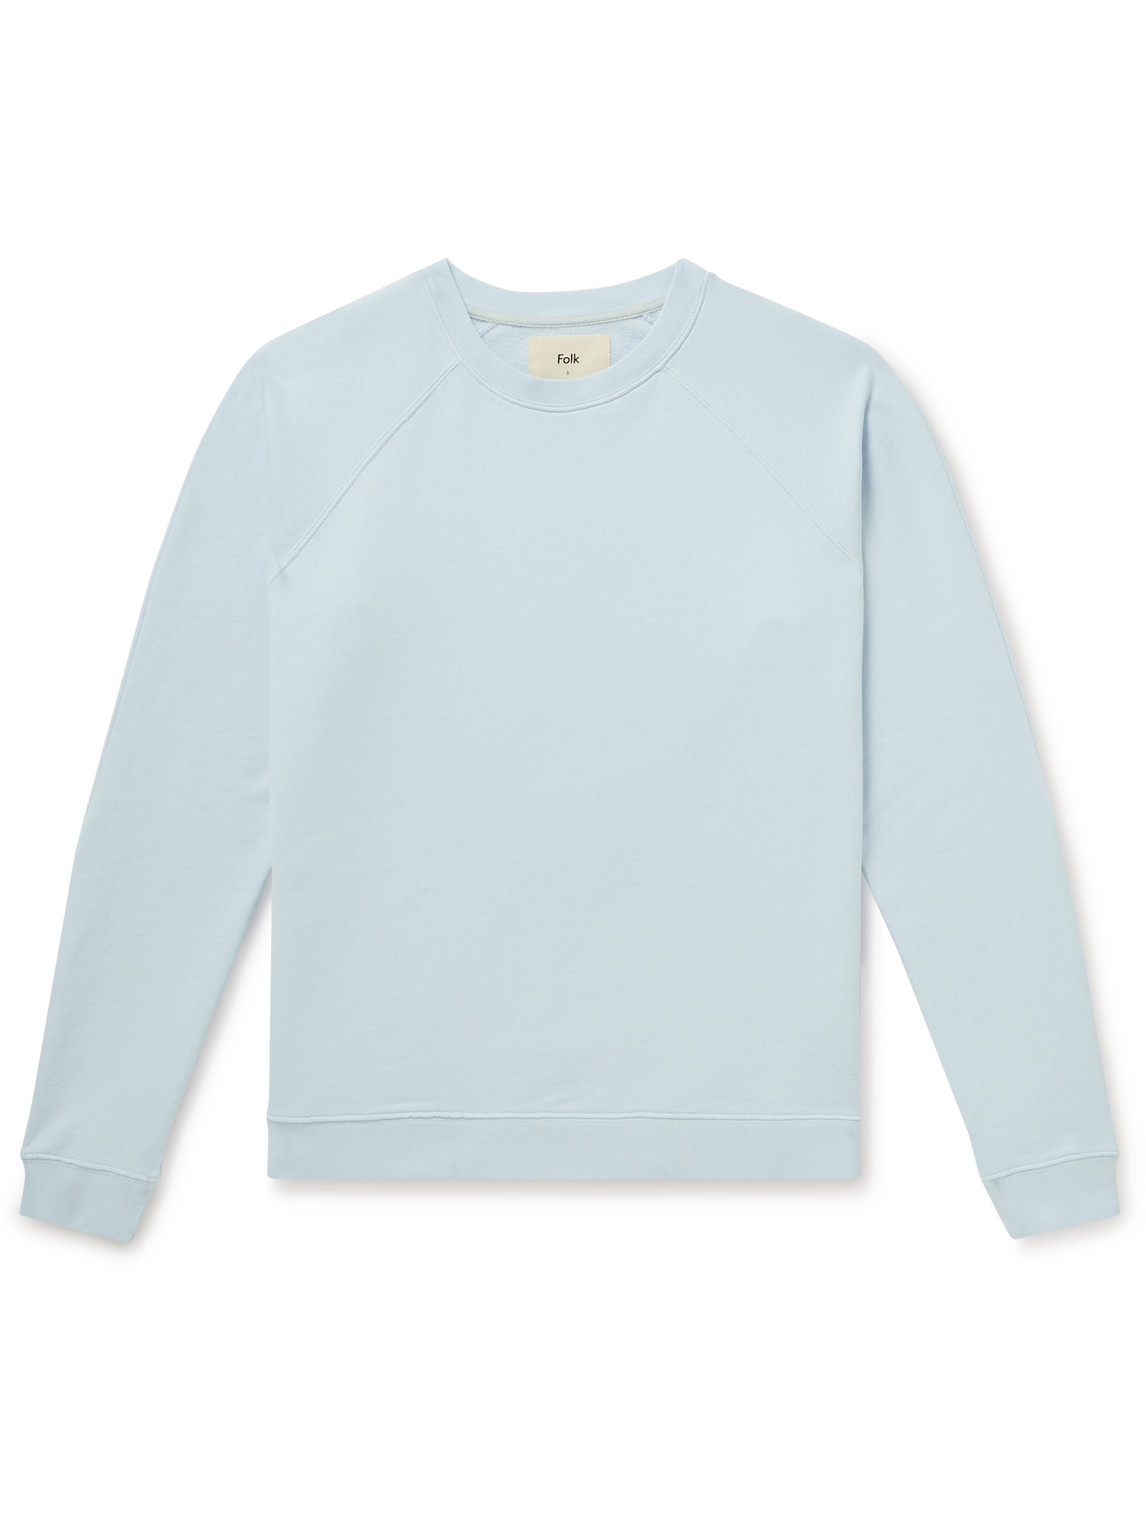 Folk Rivet Garment-dyed Cotton-jersey Sweatshirt In Blue